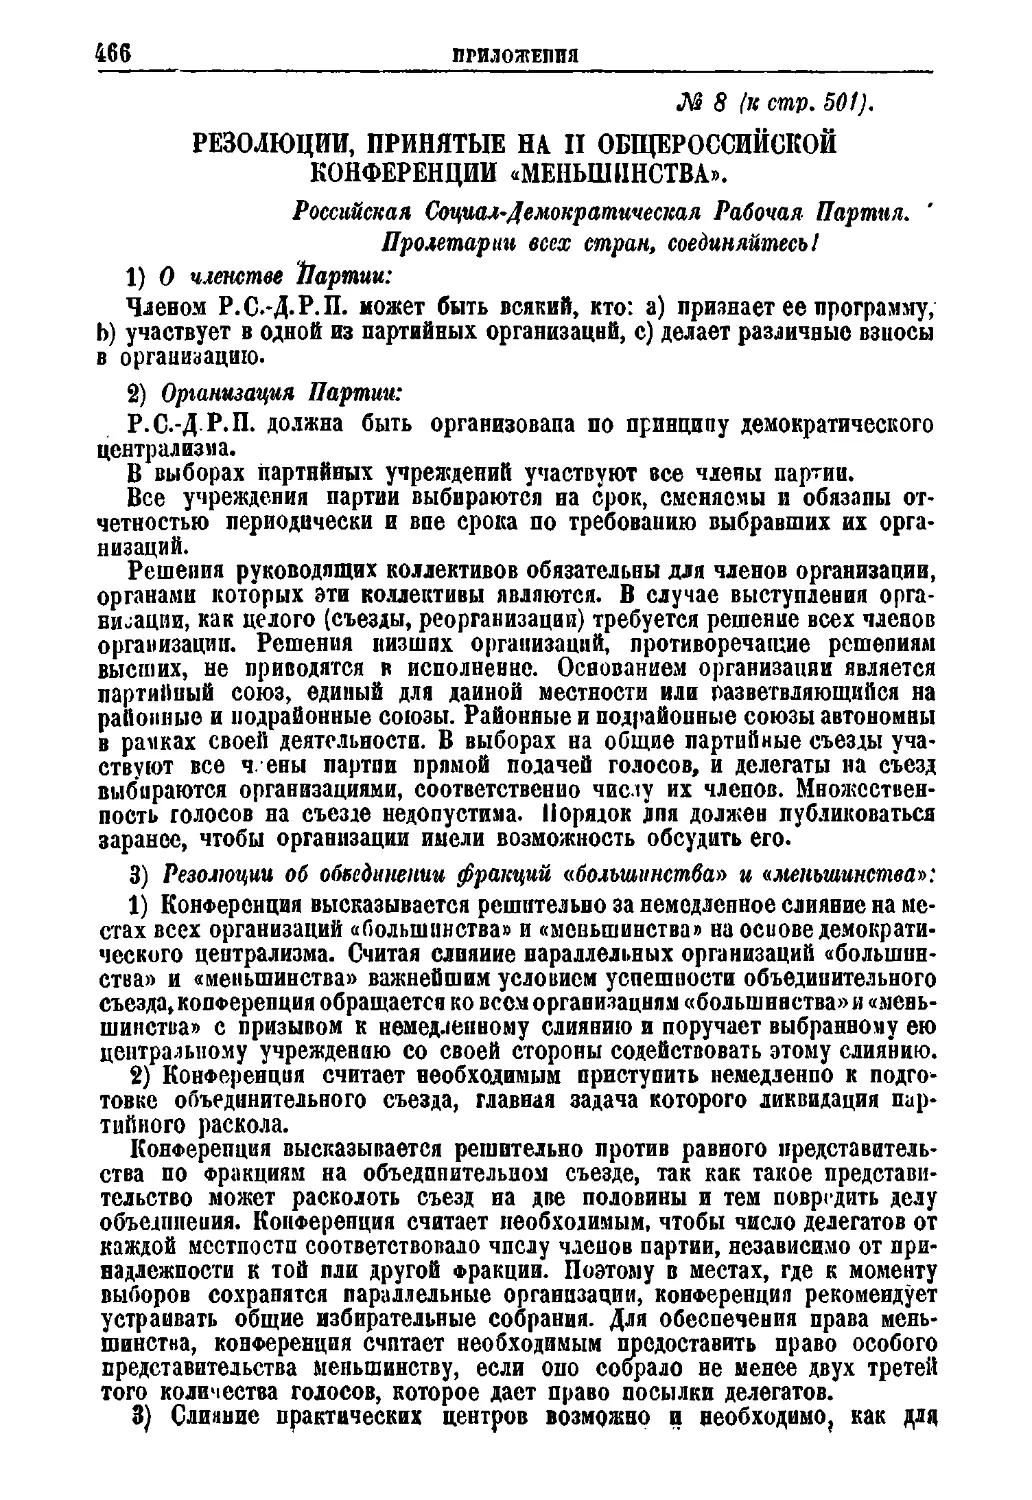 № 8. Резолюции, принятые на II Общероссийской конференции «меньшинства»